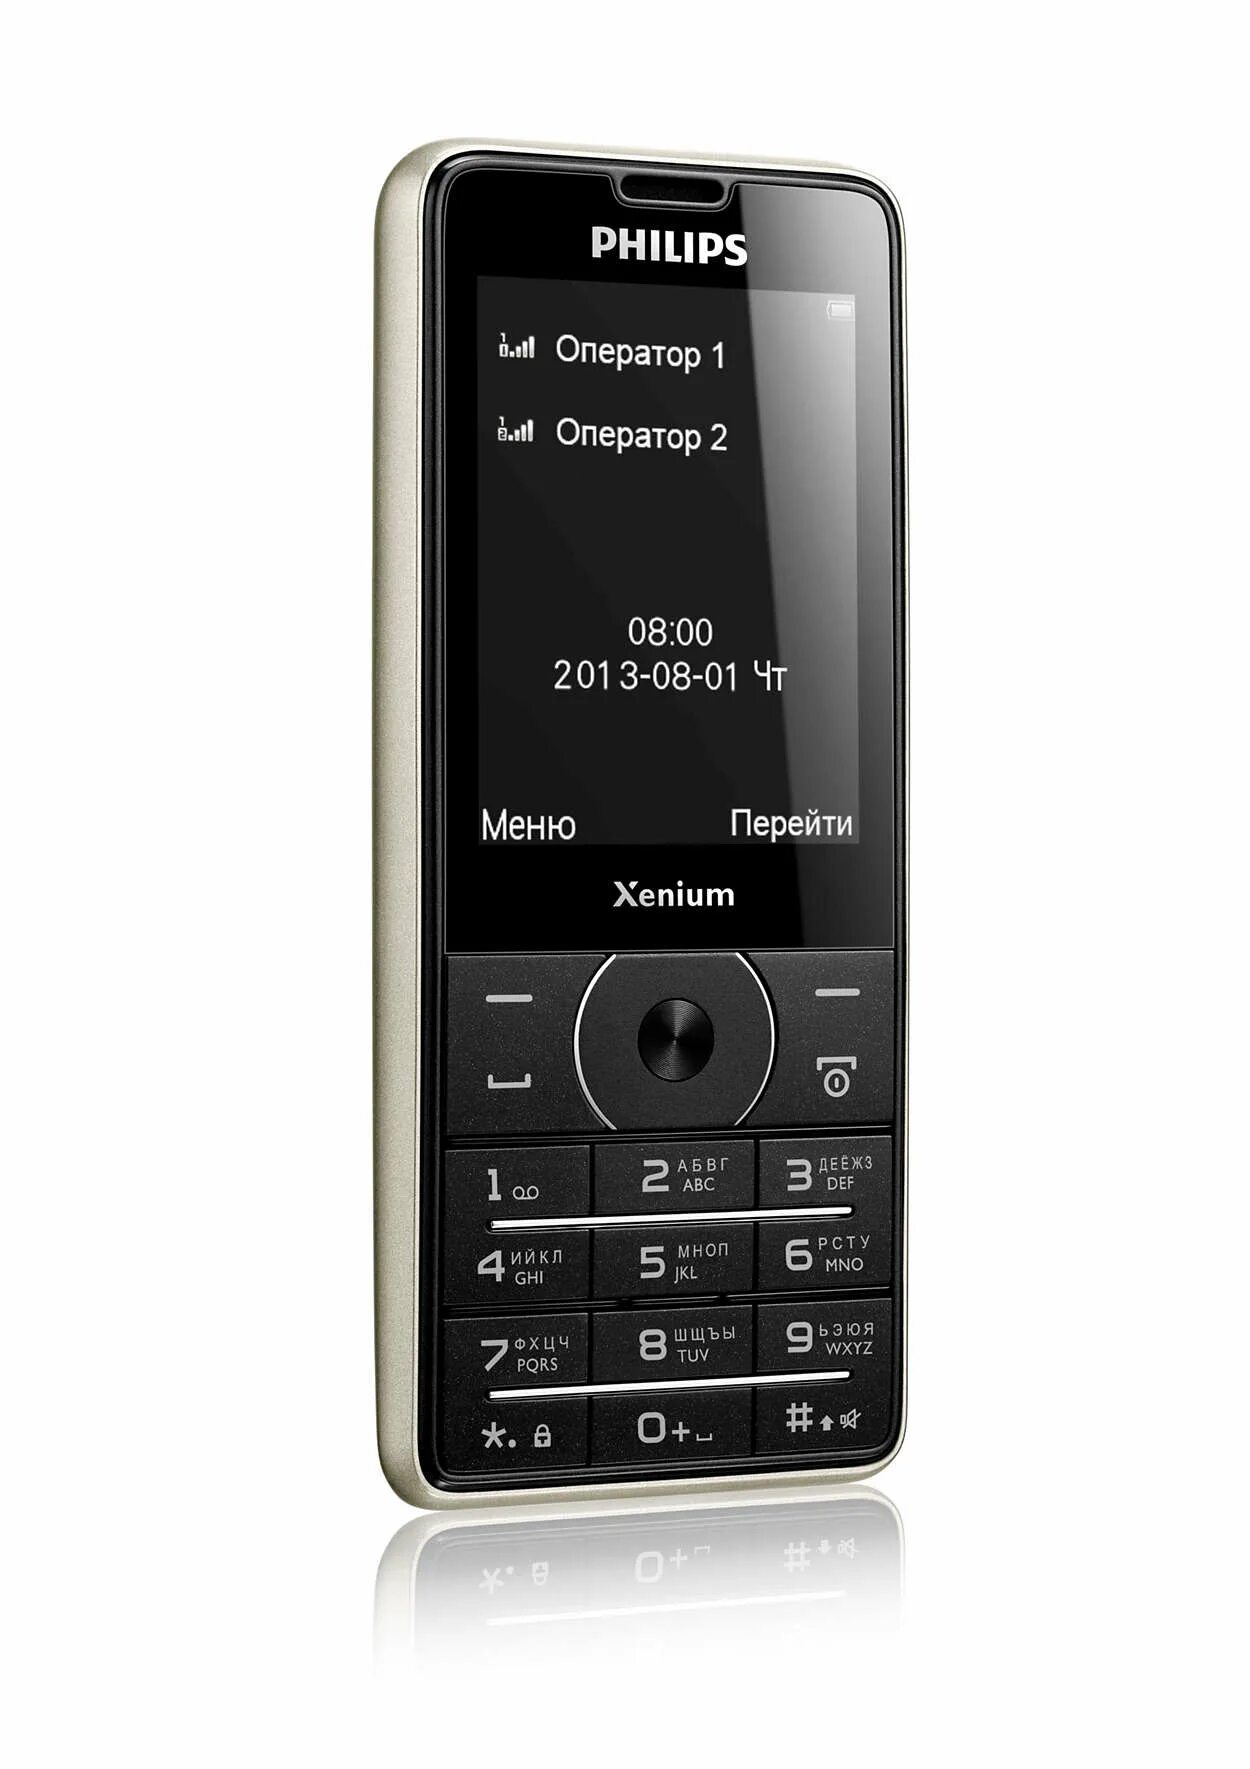 Philips Xenium x1560. Philips x1560 (Black). Philips Xenium 1560. Телефон Филипс Xenium 1560. Бесплатный телефон филипс